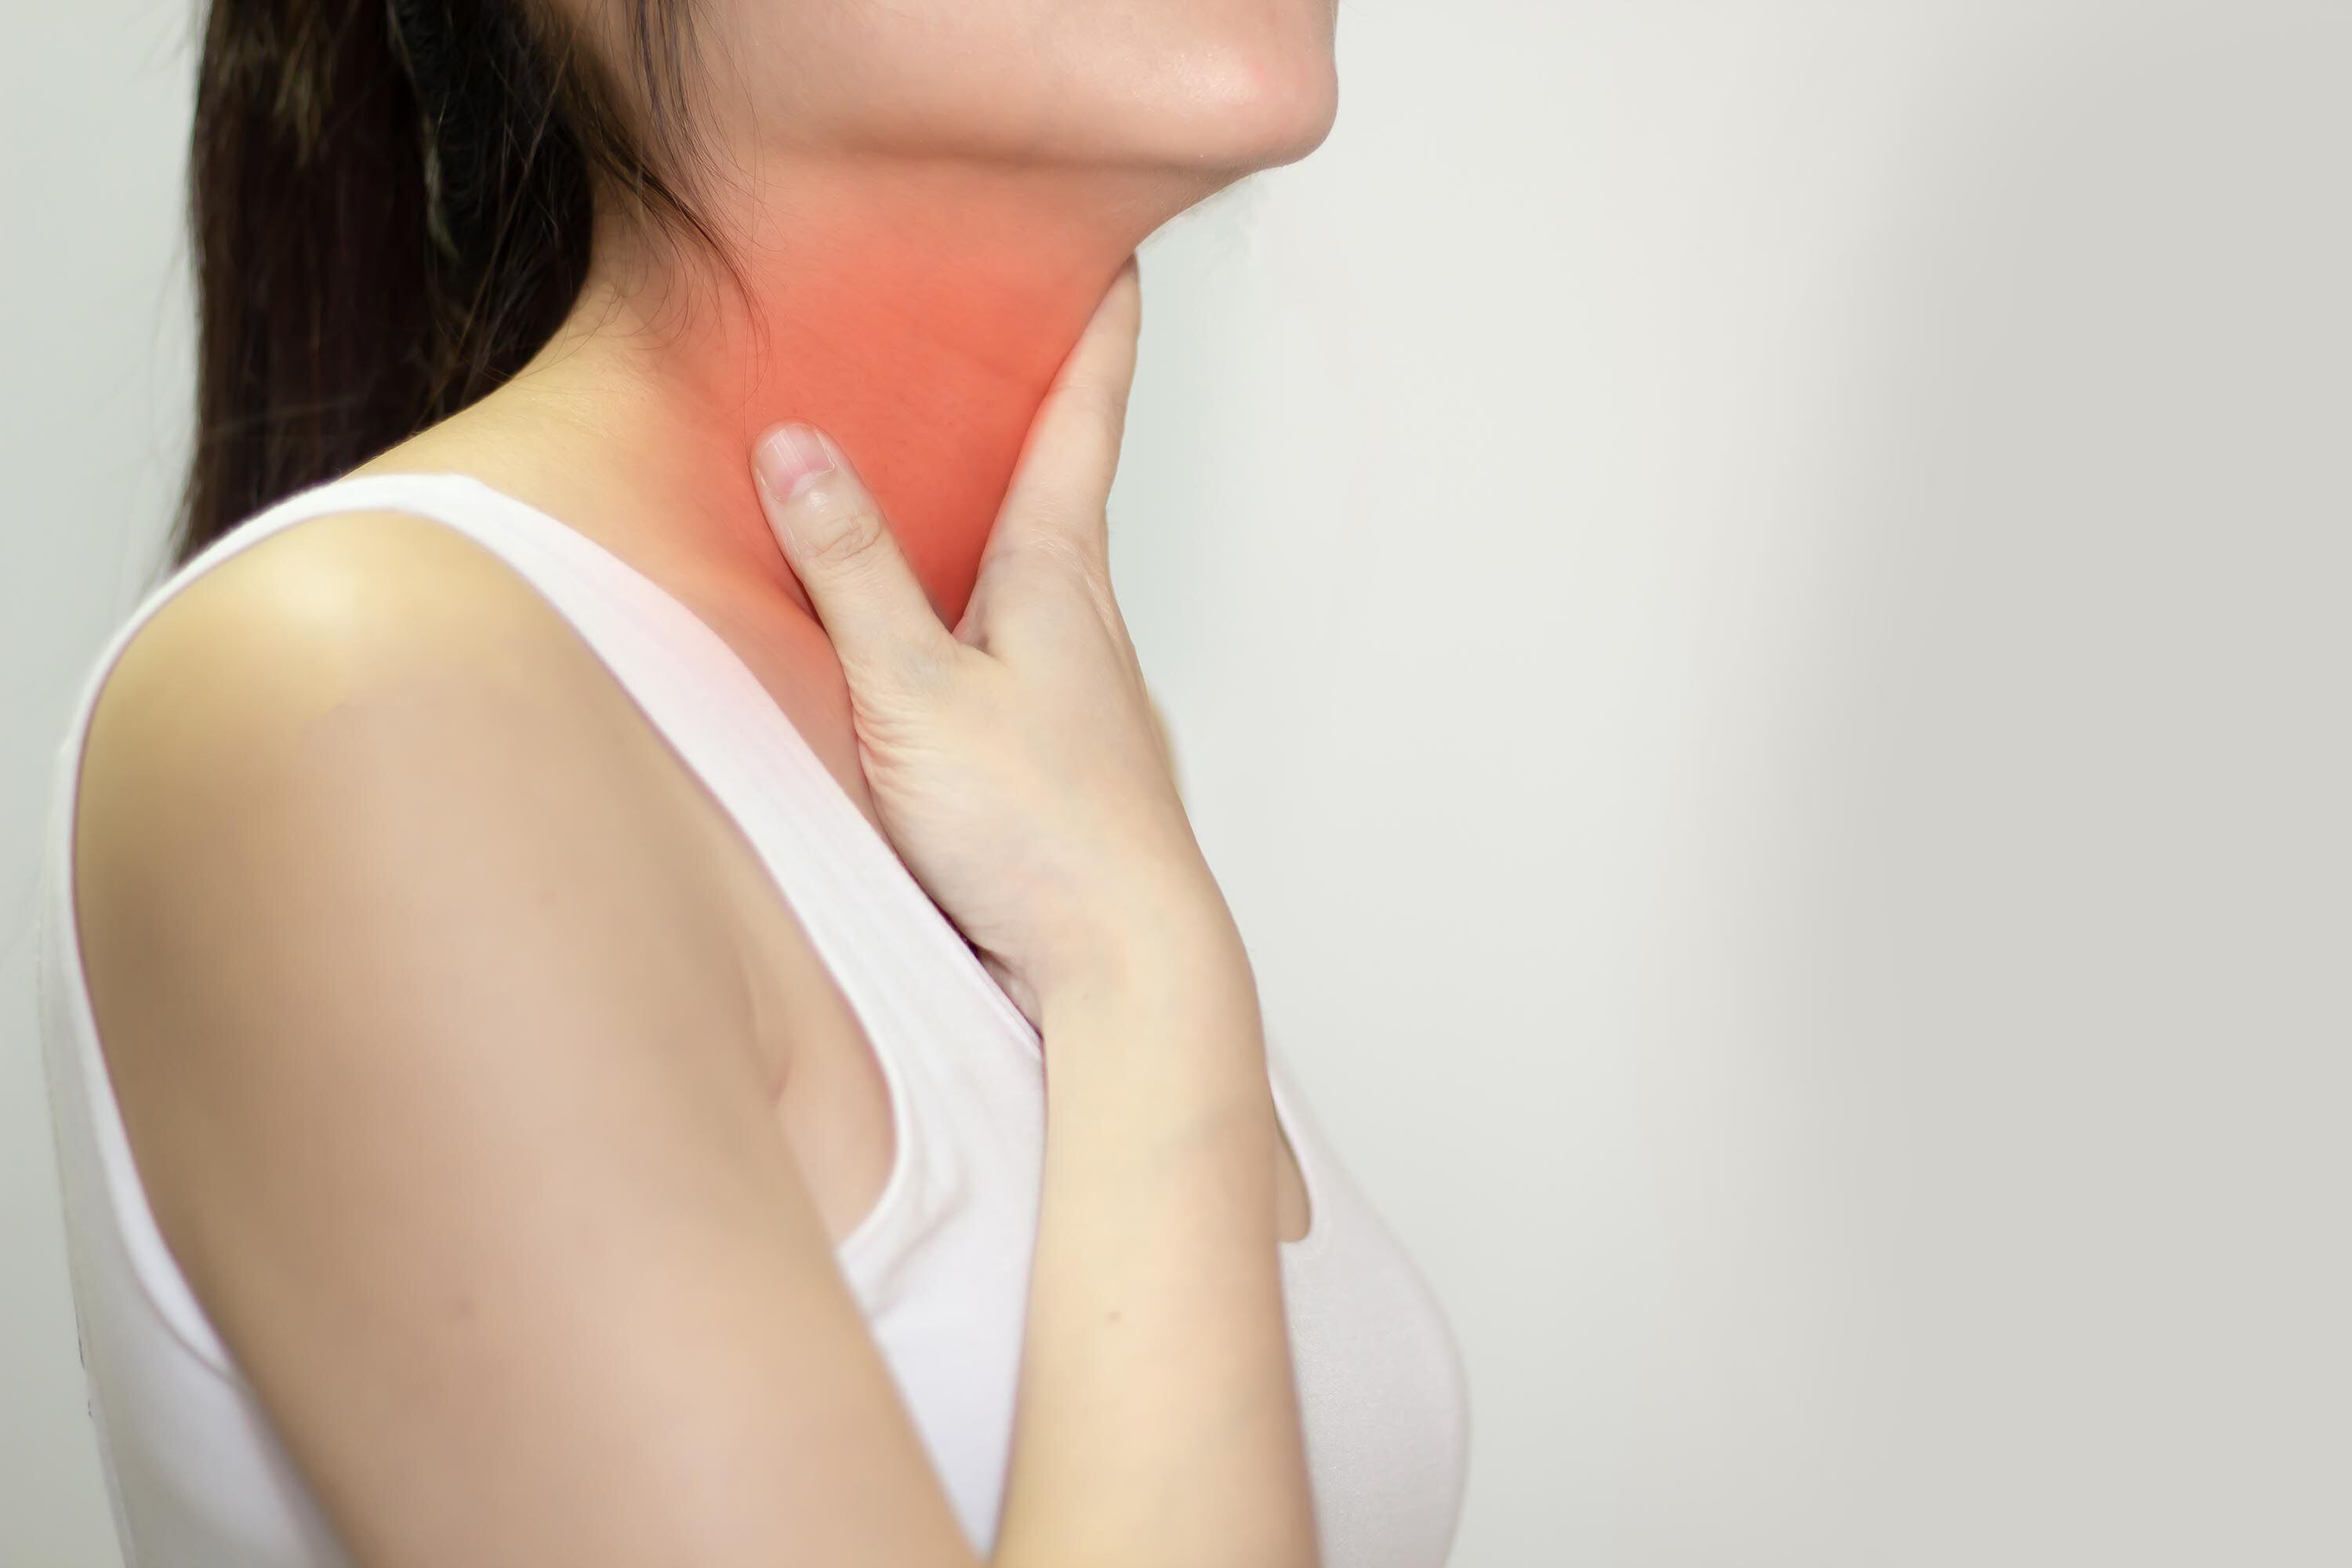 El dolor de garganta puede deberse a varias causas y es bueno explorar a cuál es. Fotografía: Shutterstock